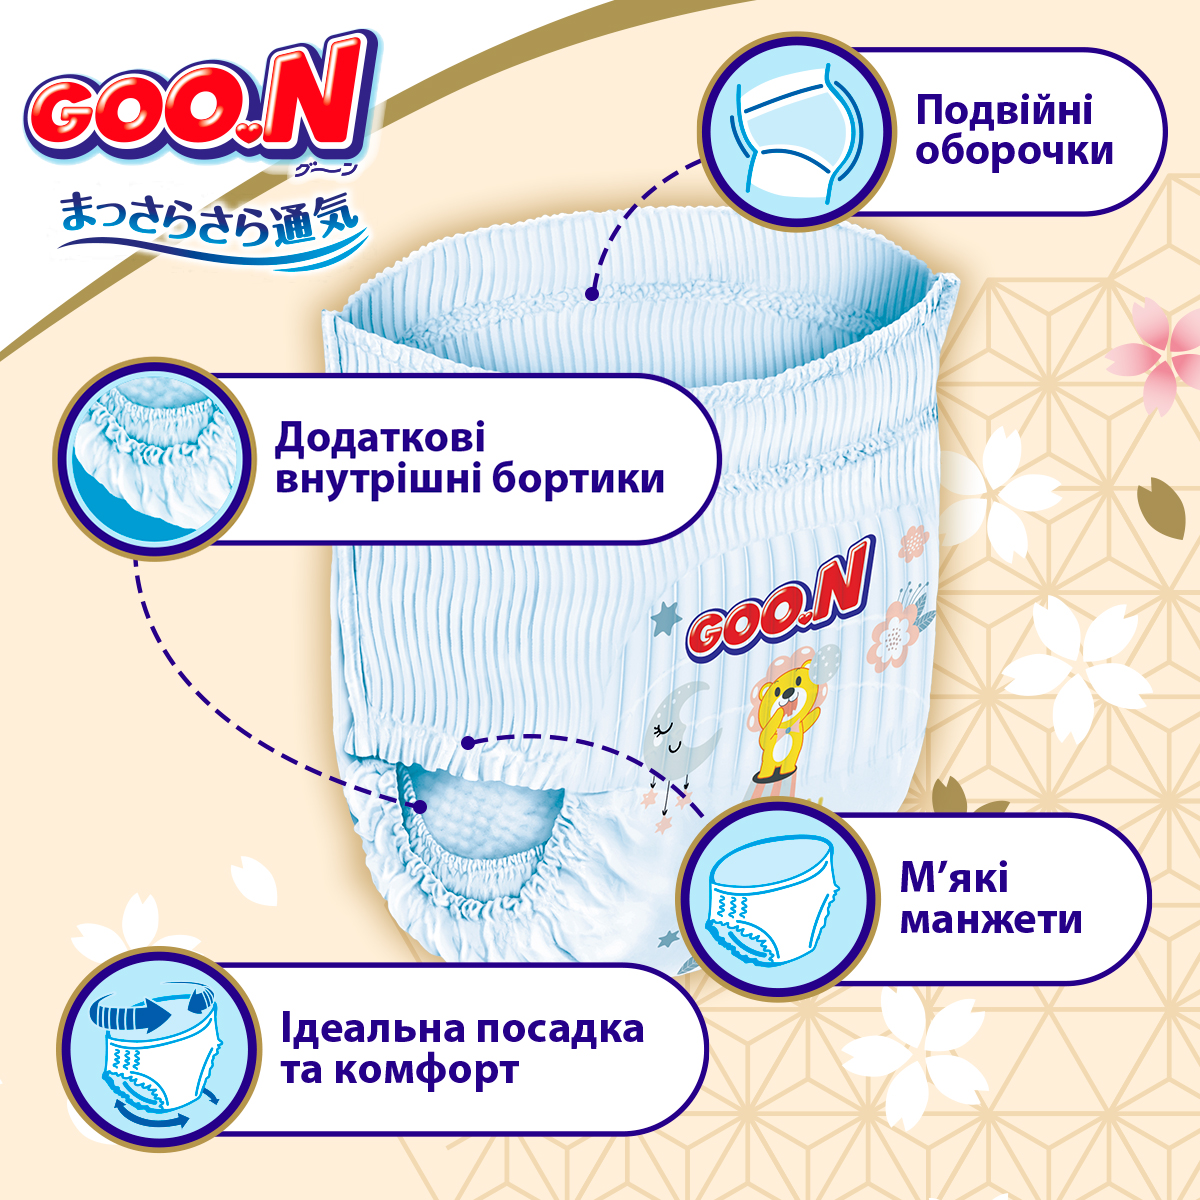 Трусики-підгузки Goo.N Premium Soft розмір 4(L) 9-14 кг доу-пак 88 шт. - фото 4